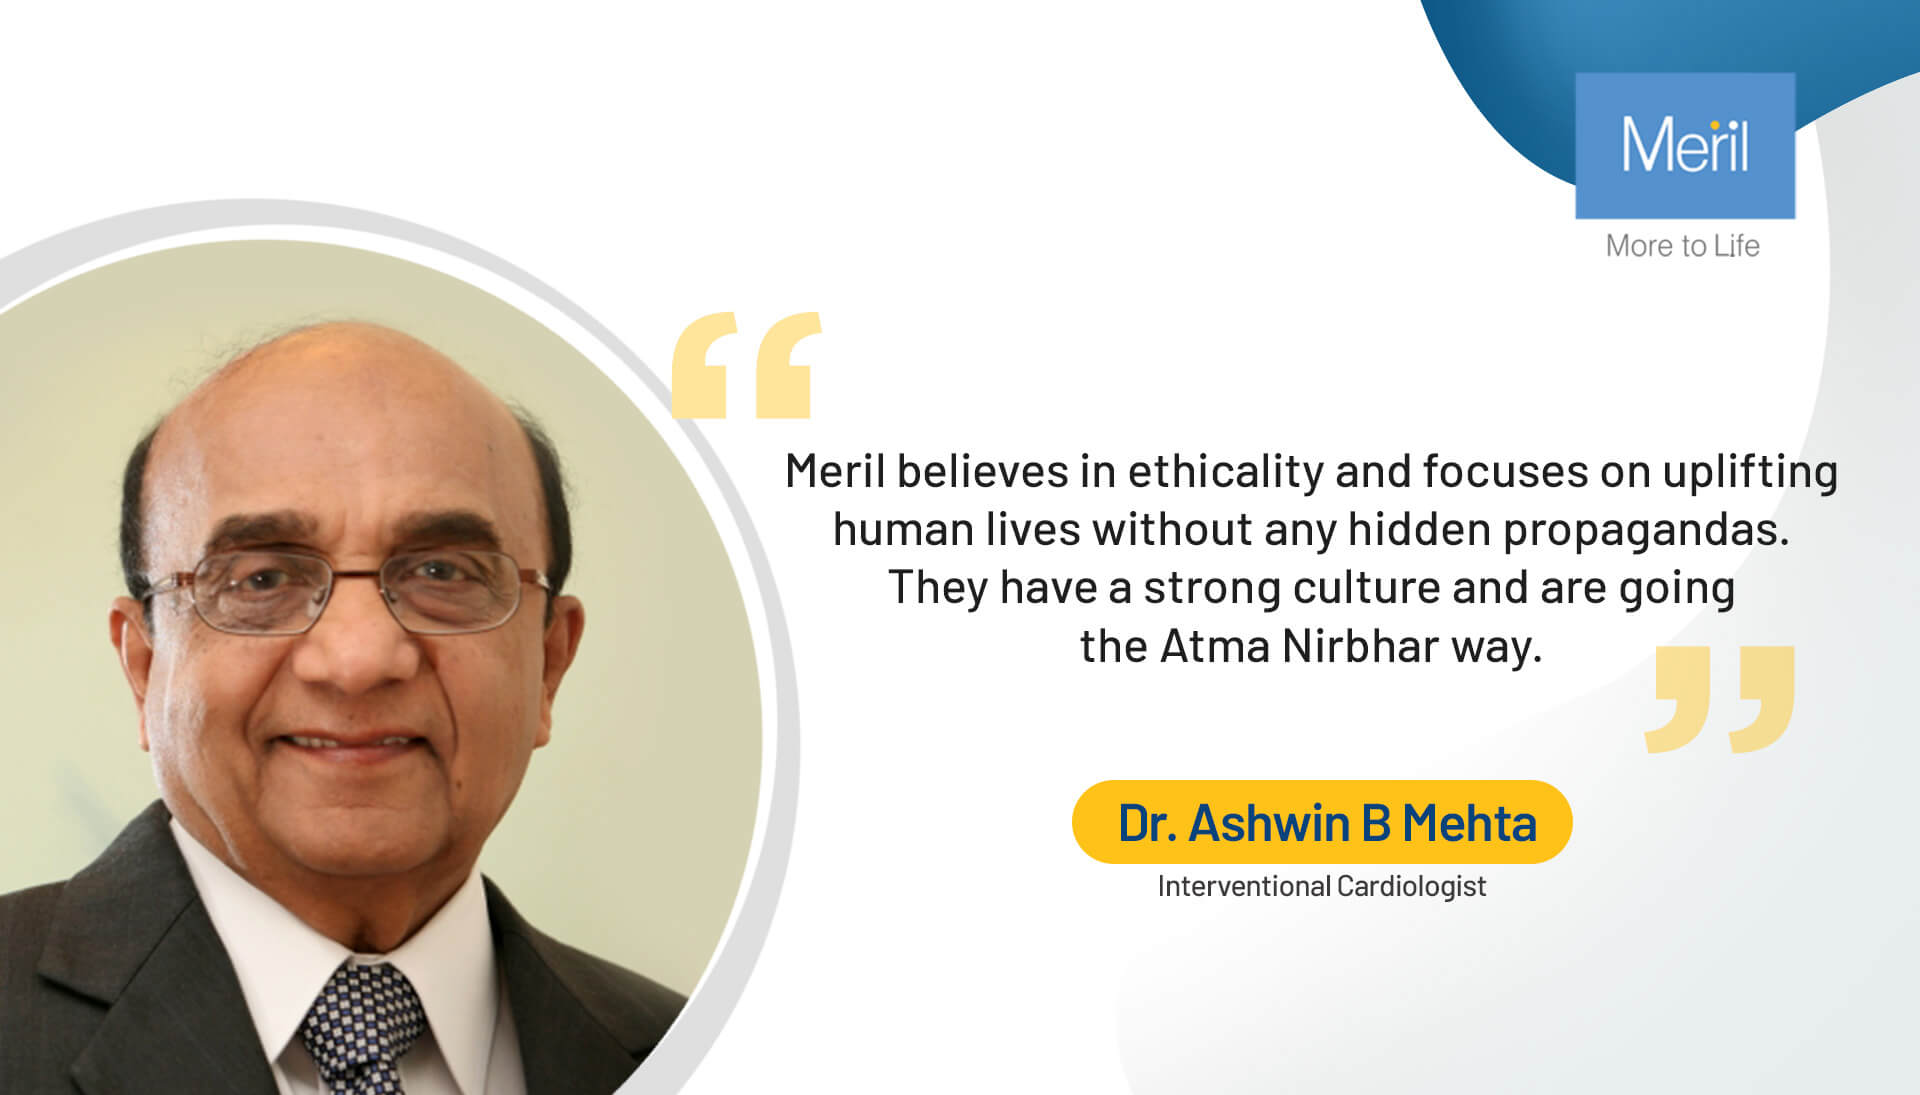 Testimonial by Dr. Ashwin B Mehta